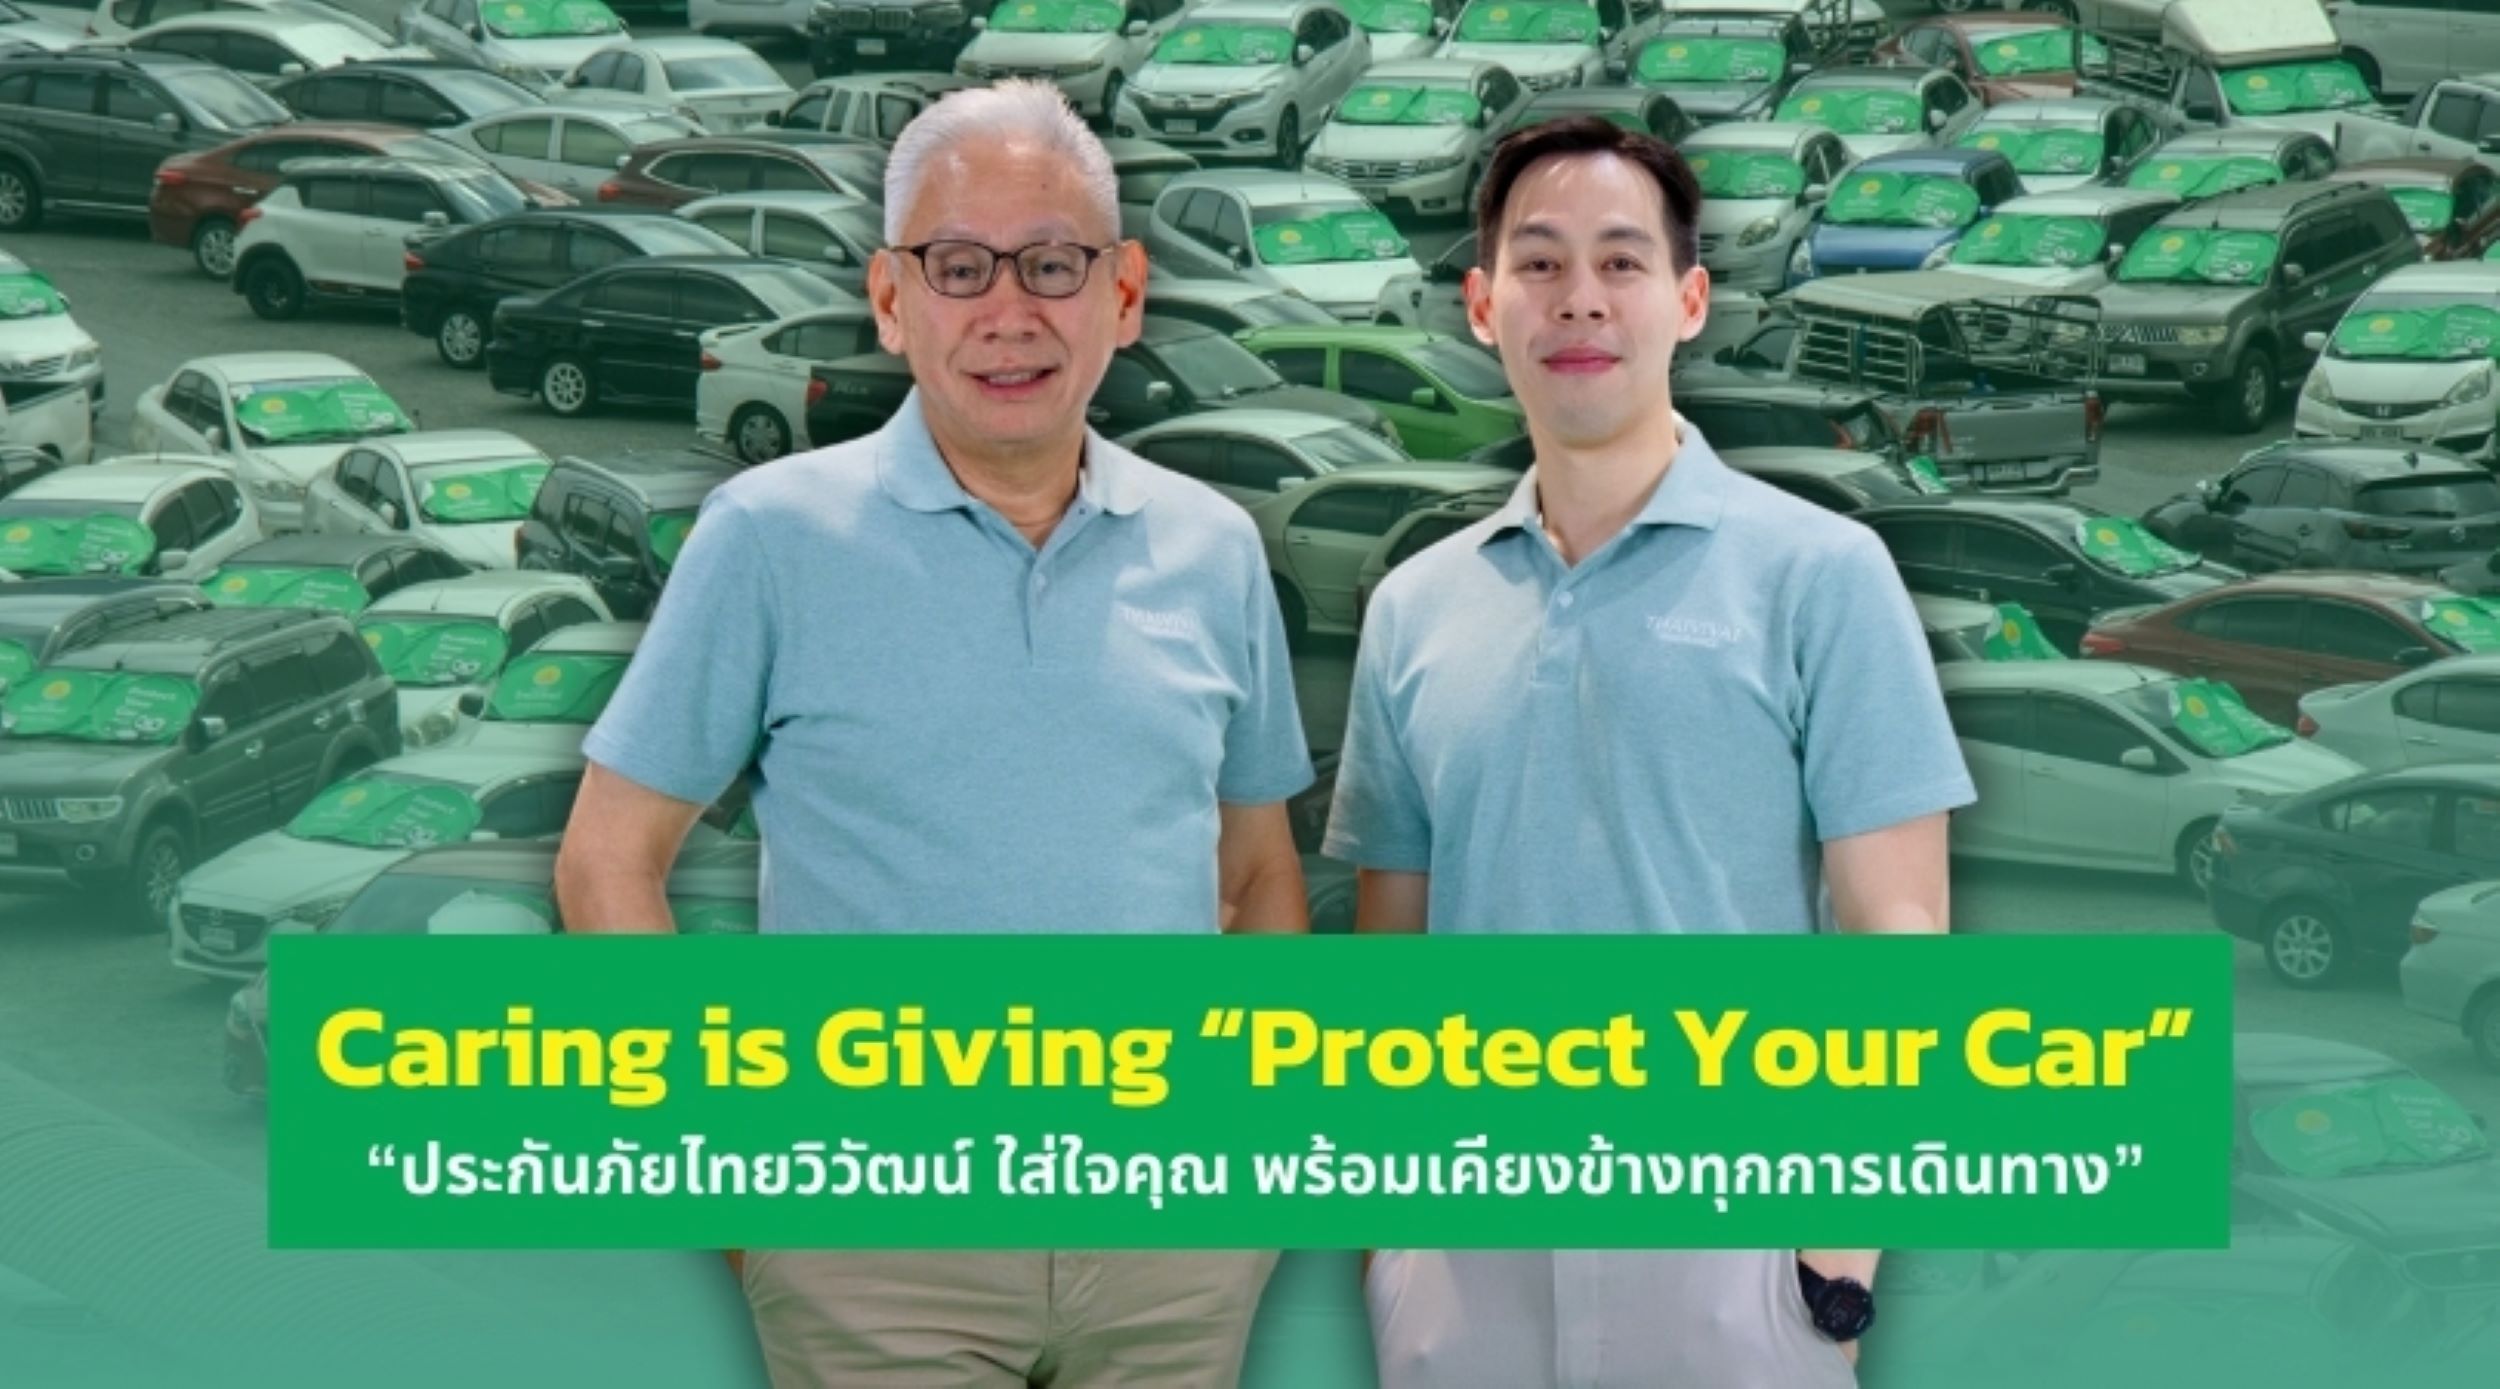 Caring is Giving “Protect Your Car” “ประกันภัยไทยวิวัฒน์ ใส่ใจคุณ พร้อมเคียงข้างทุกการเดินทาง” ชวนลดความเสี่ยง ปกป้องรถที่คุณรักอย่างยั่งยืน